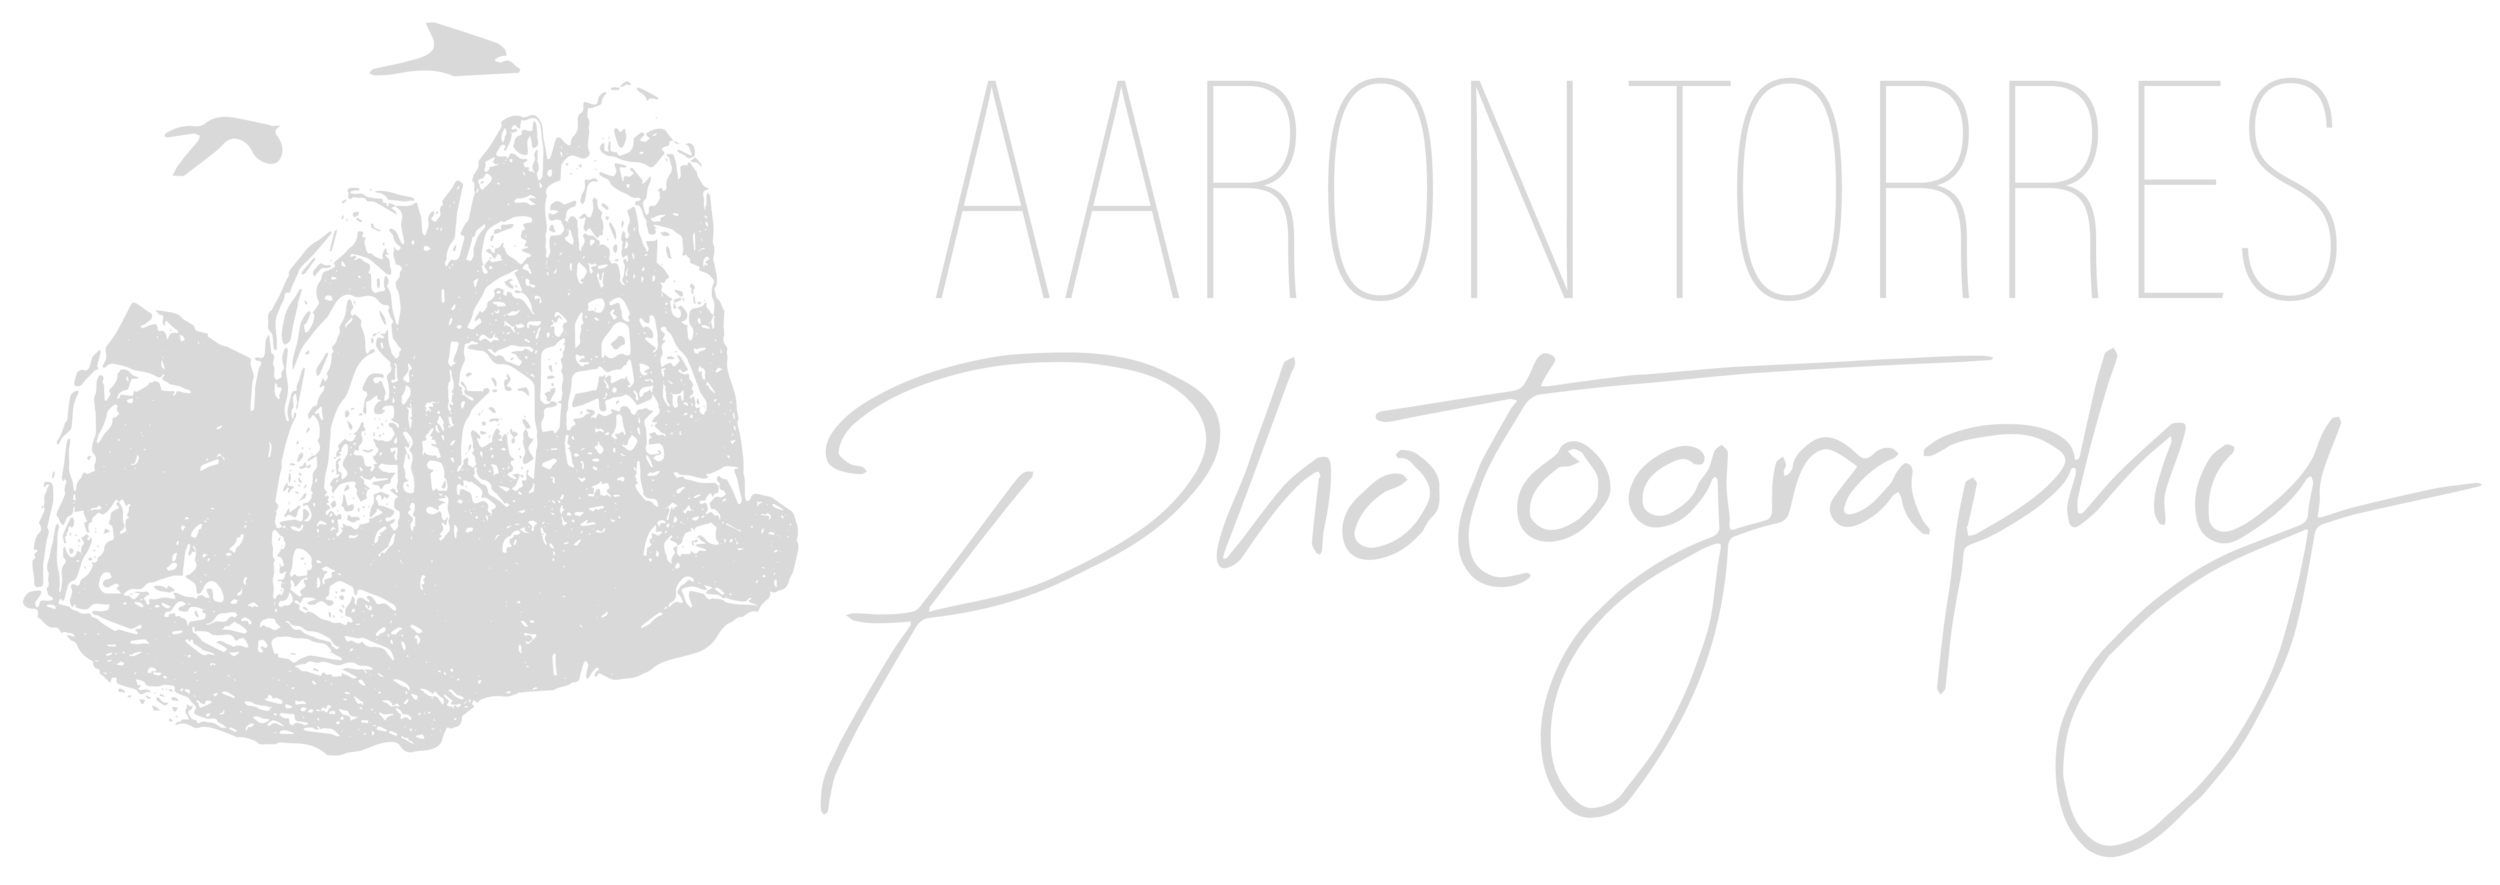 Aaron Torres Photography